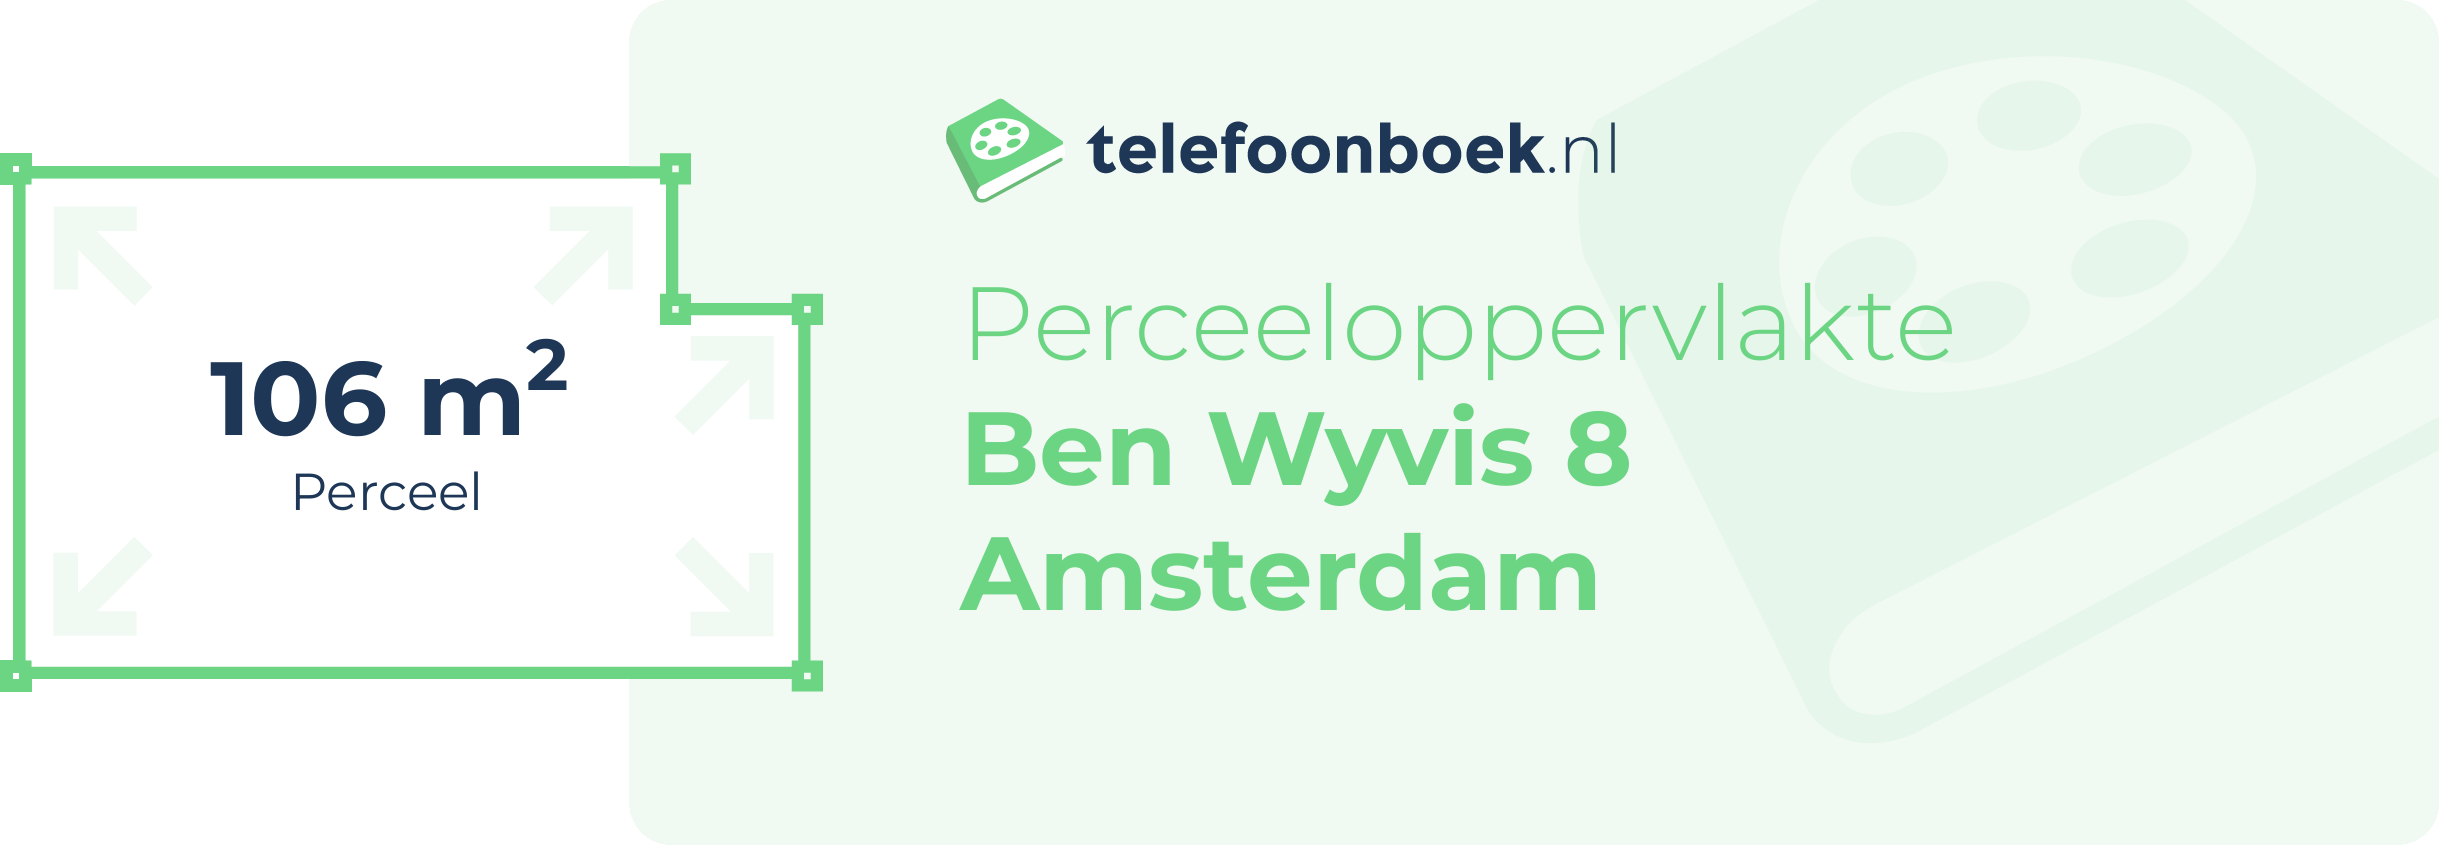 Perceeloppervlakte Ben Wyvis 8 Amsterdam